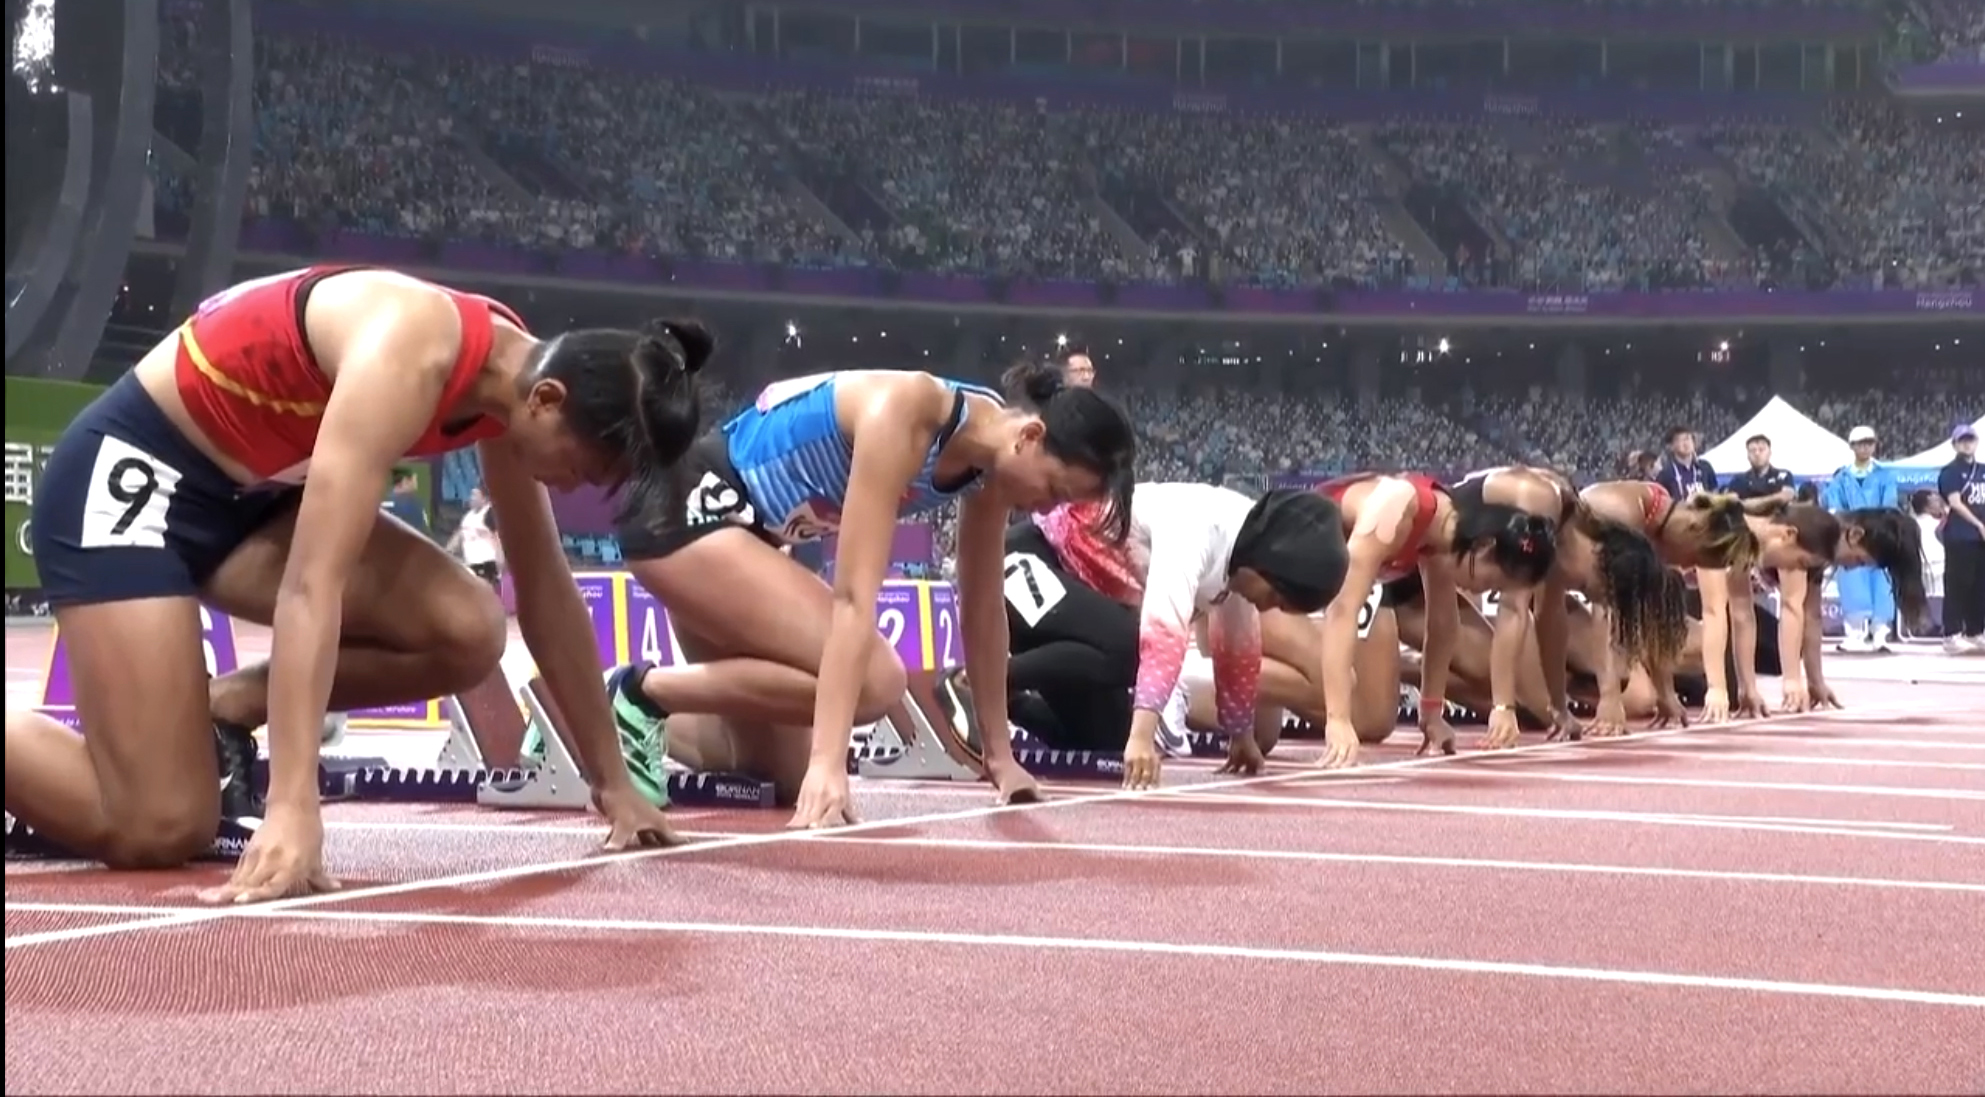 ASIAD 19 ngày 29-9: Trần Thị Nhi Yến vào chung kết cự ly 100m nữ - Ảnh 1.